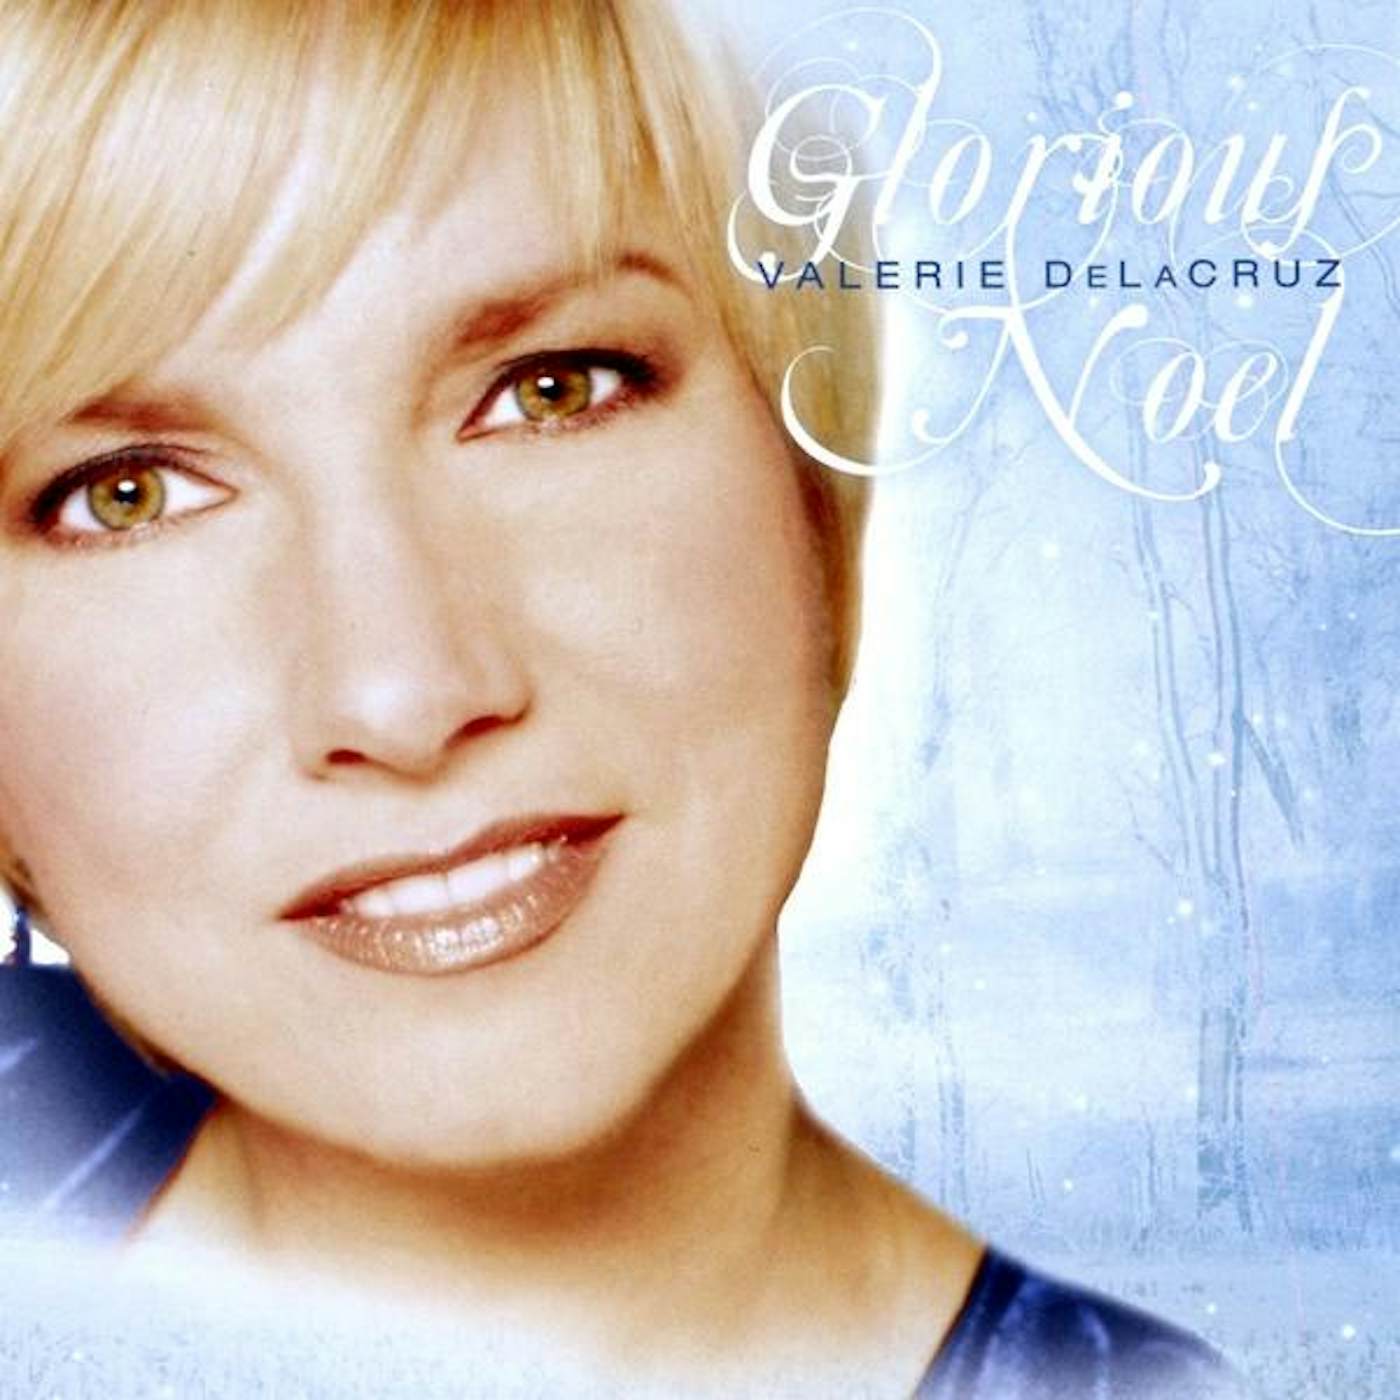 Valerie Delacruz GLORIOUS NOEL CD